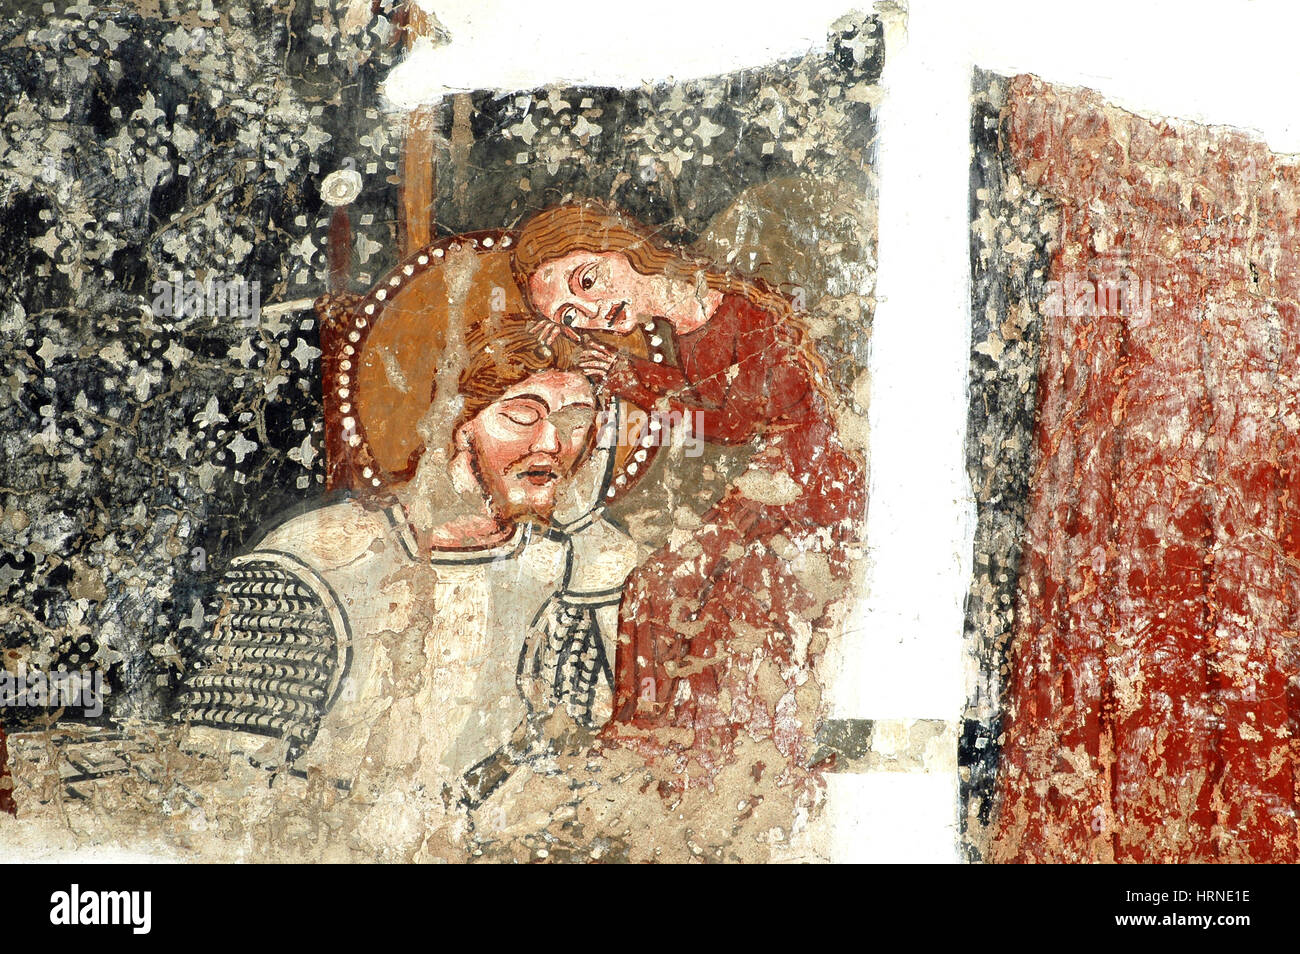 DARJIU, Roumanie - 12 MAI 2008 : Le 13ème siècle, peintures murales de l'église de Szekelyderzs, découvert lors d'une restauration, présente dans la légende du pendu Banque D'Images